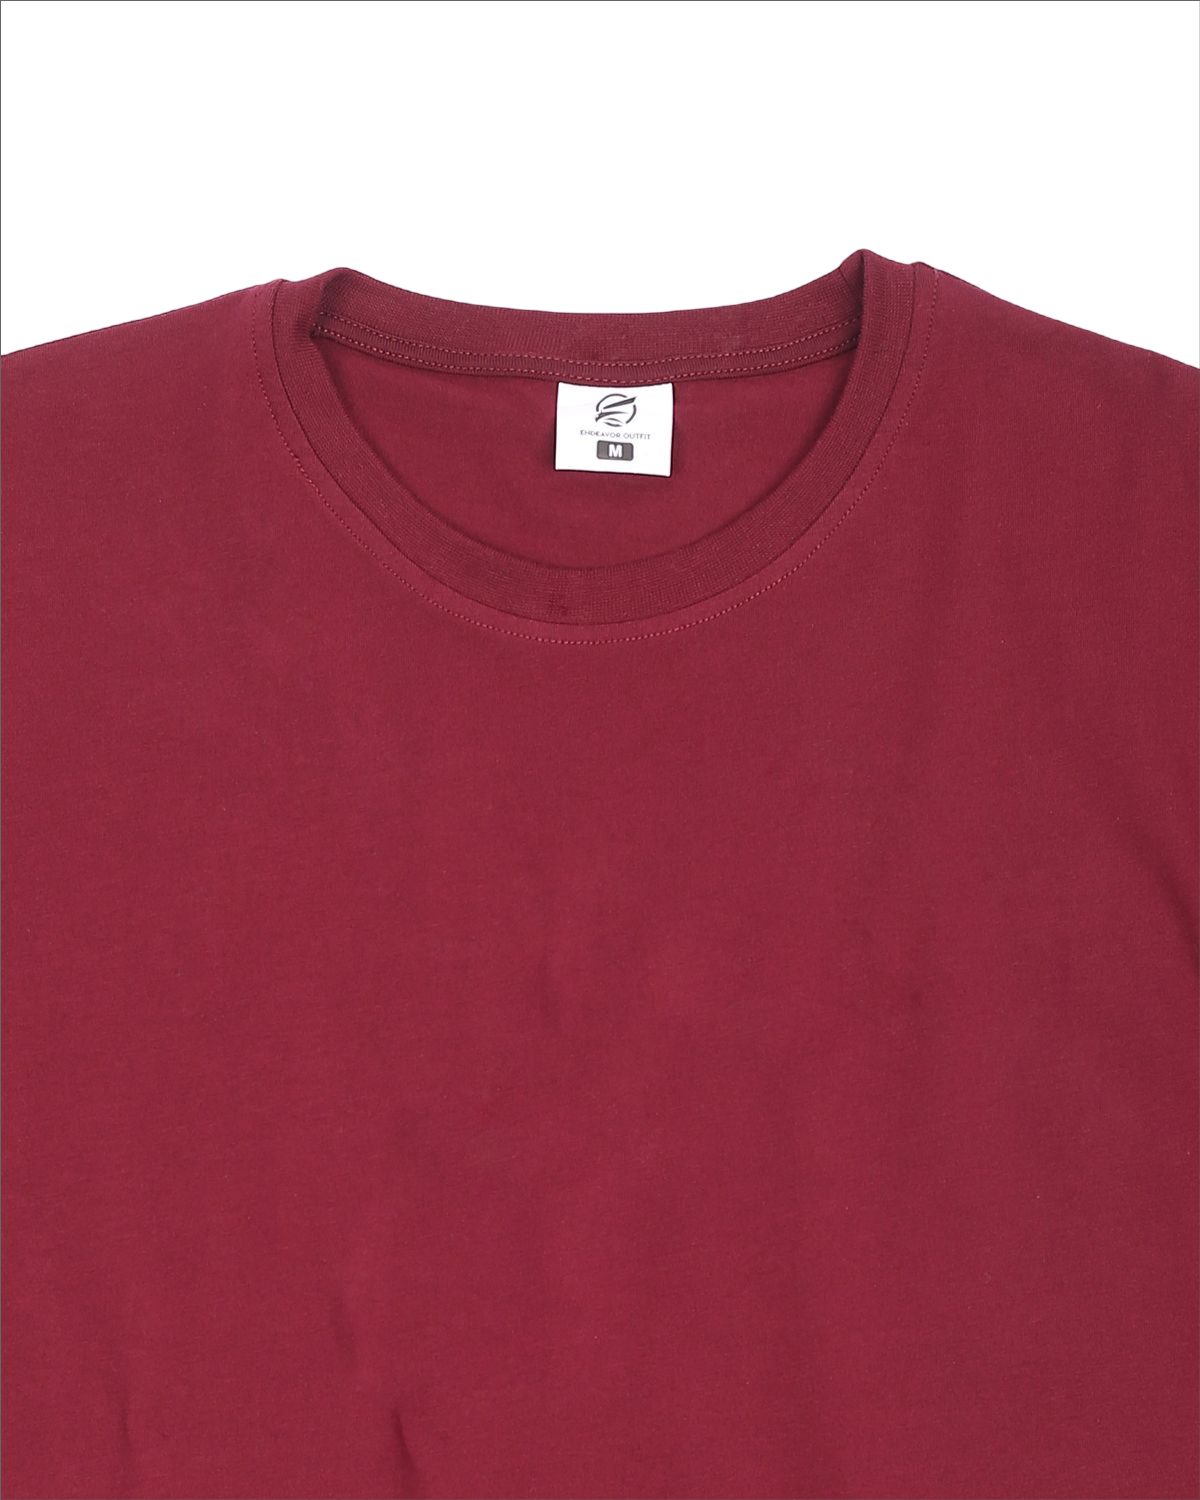 Endeavor Outfit Curved Hem Men's Branded T-shirt -Burgundy